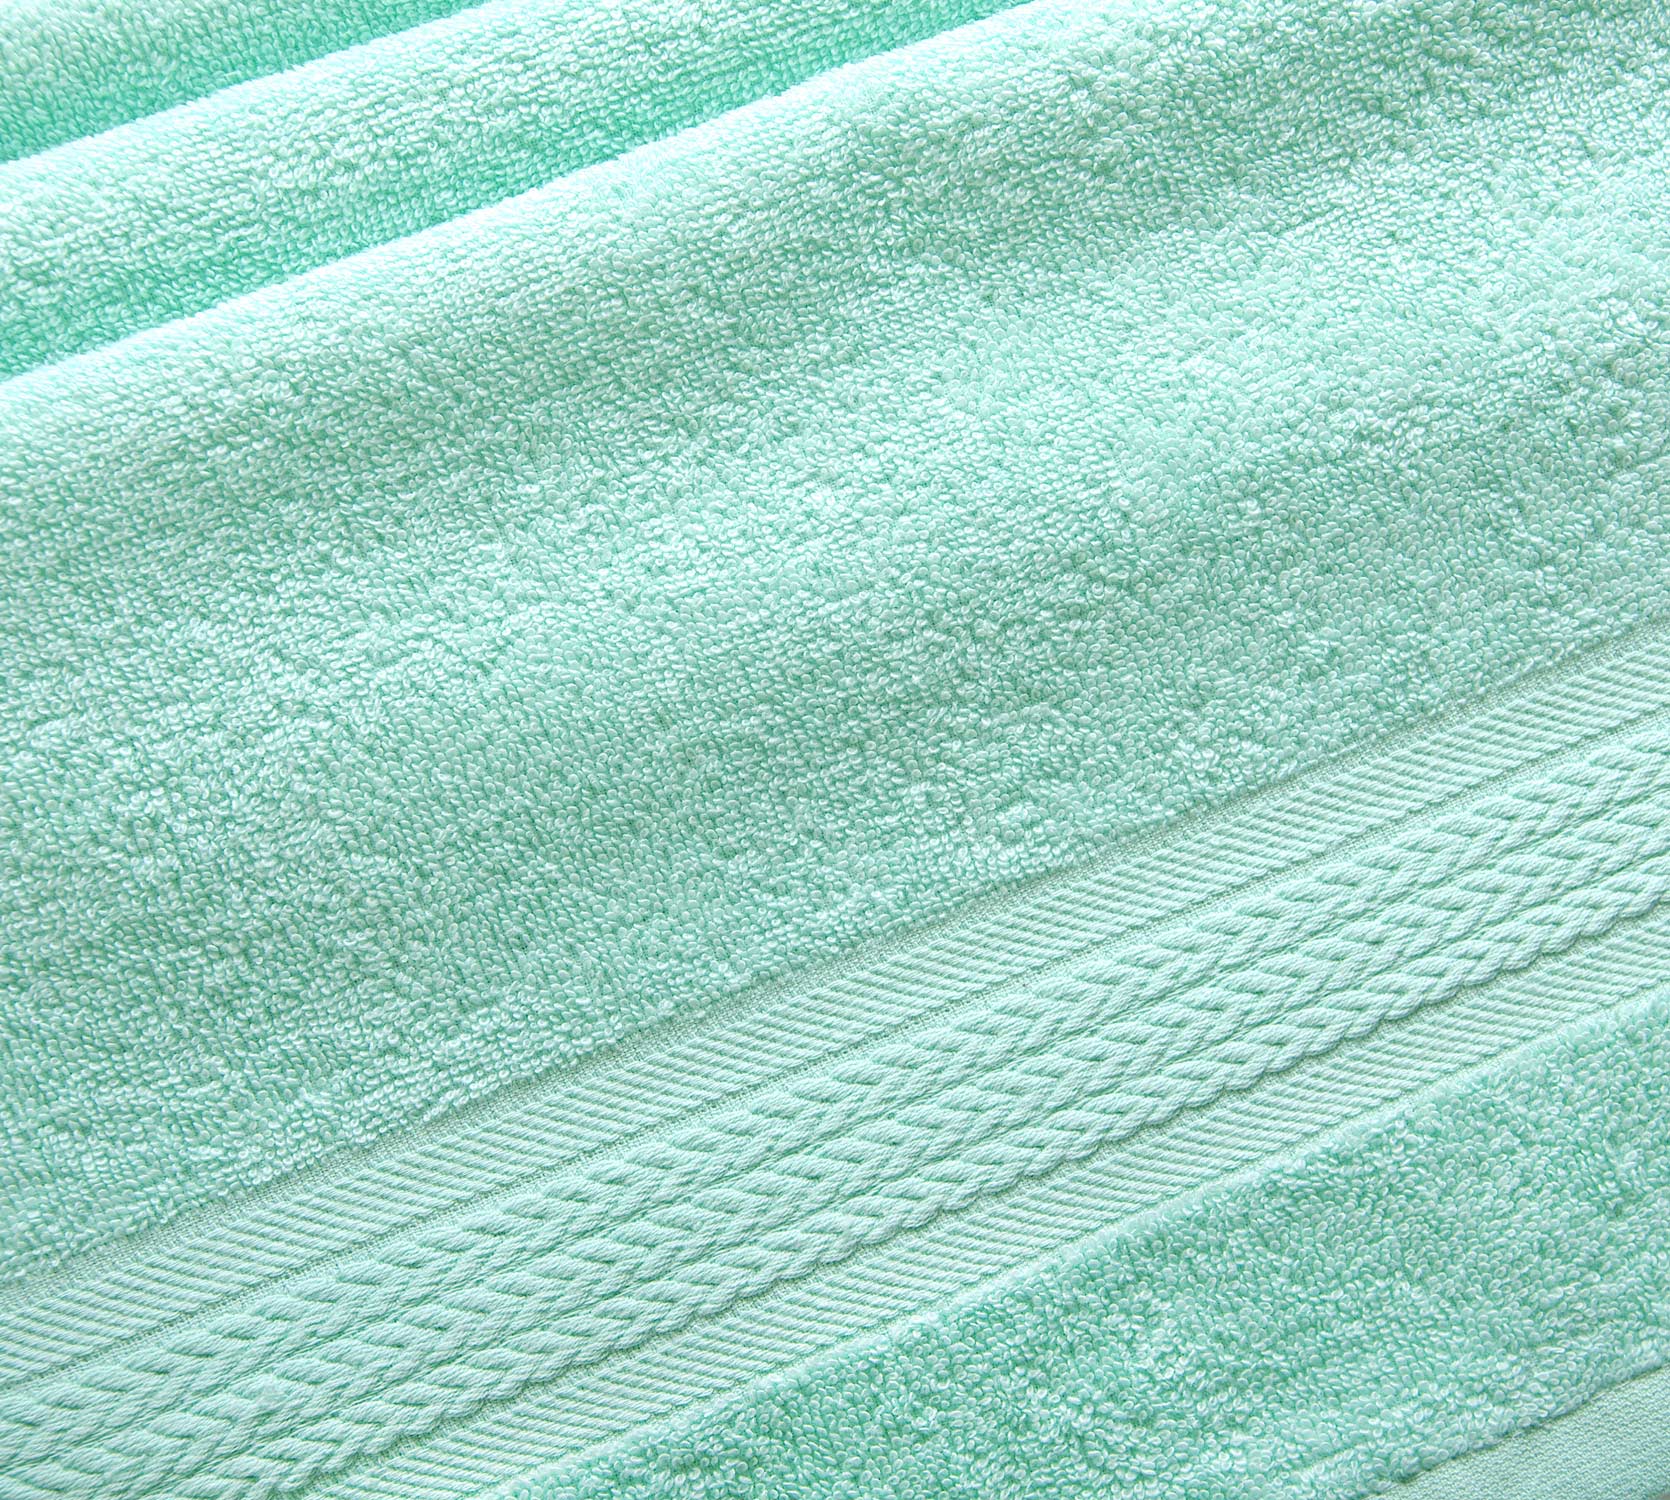 Постельное белье Махровое полотенце для рук и лица 50х90, Утро мятный  фото